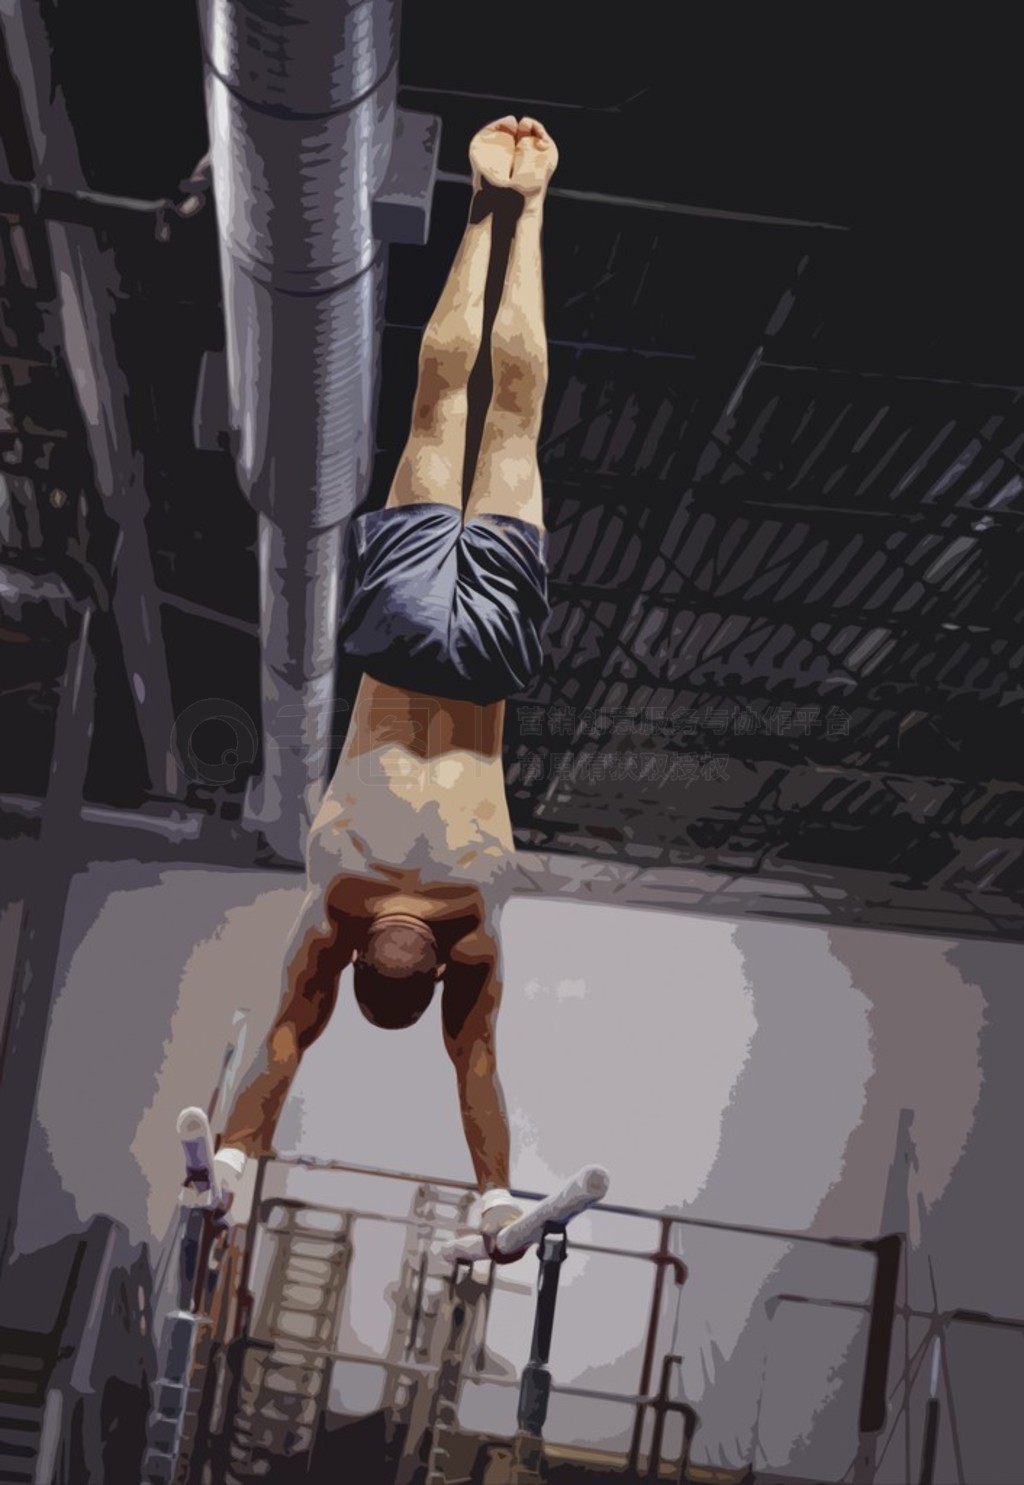 gymnaste en quilibre sur des barres parallles. Edmonton, alber